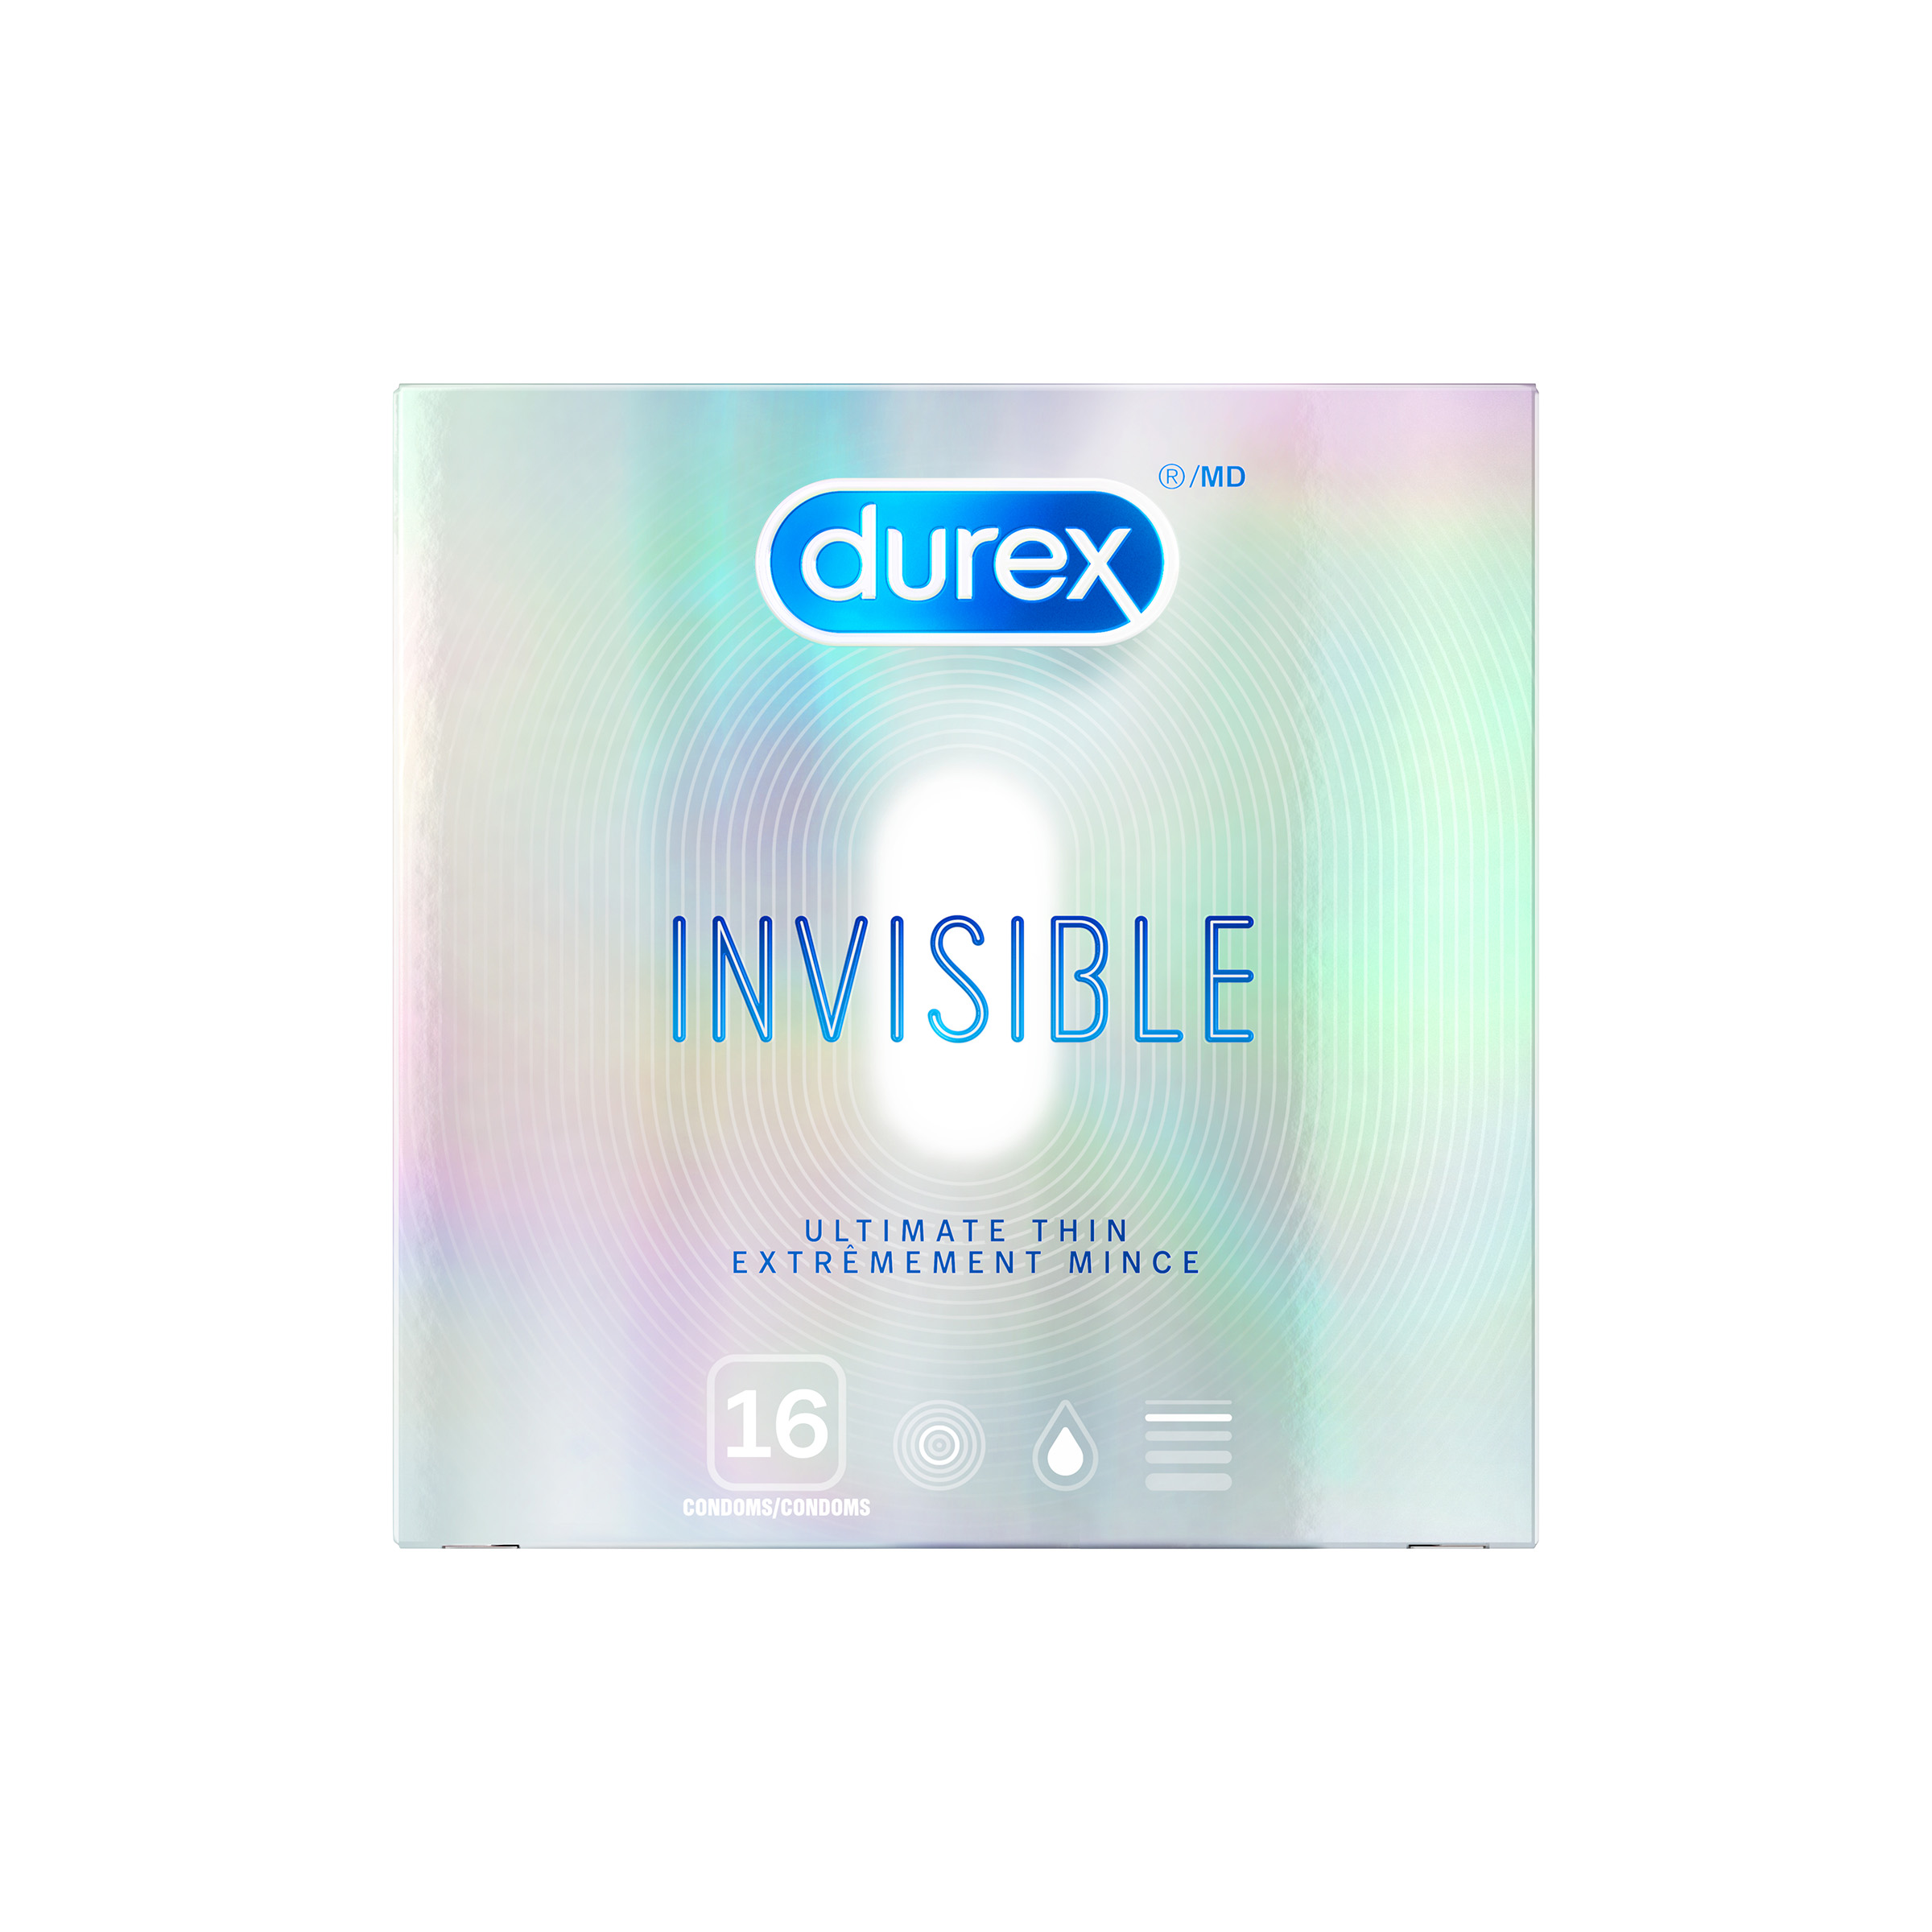 DUREX Invisible Ultimate Thin Condoms Canada Photo